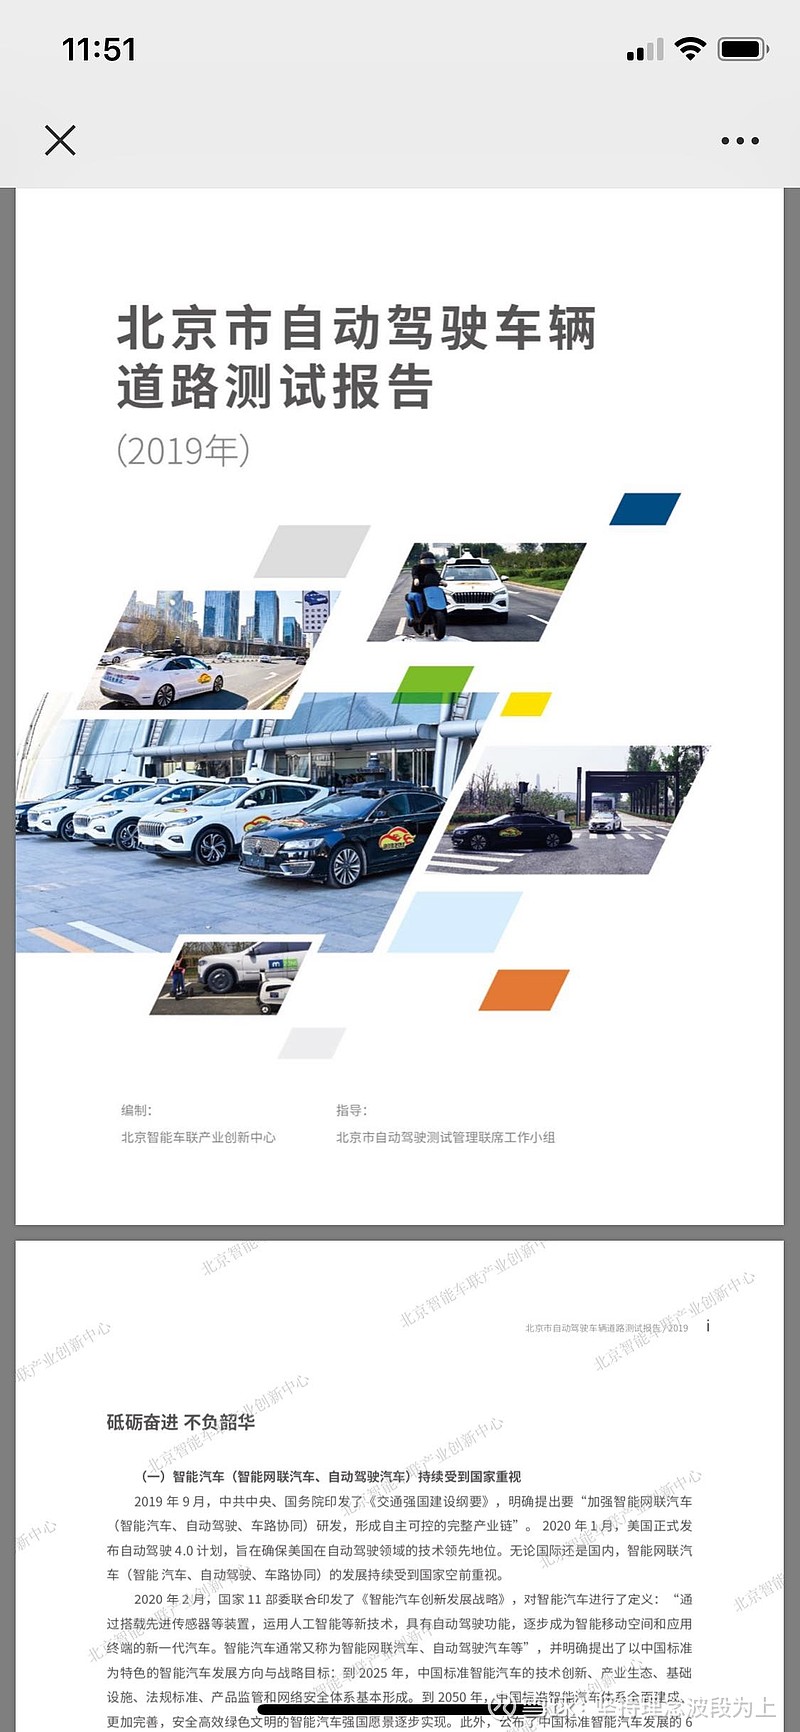 北京智能车联产业创新中心（以下